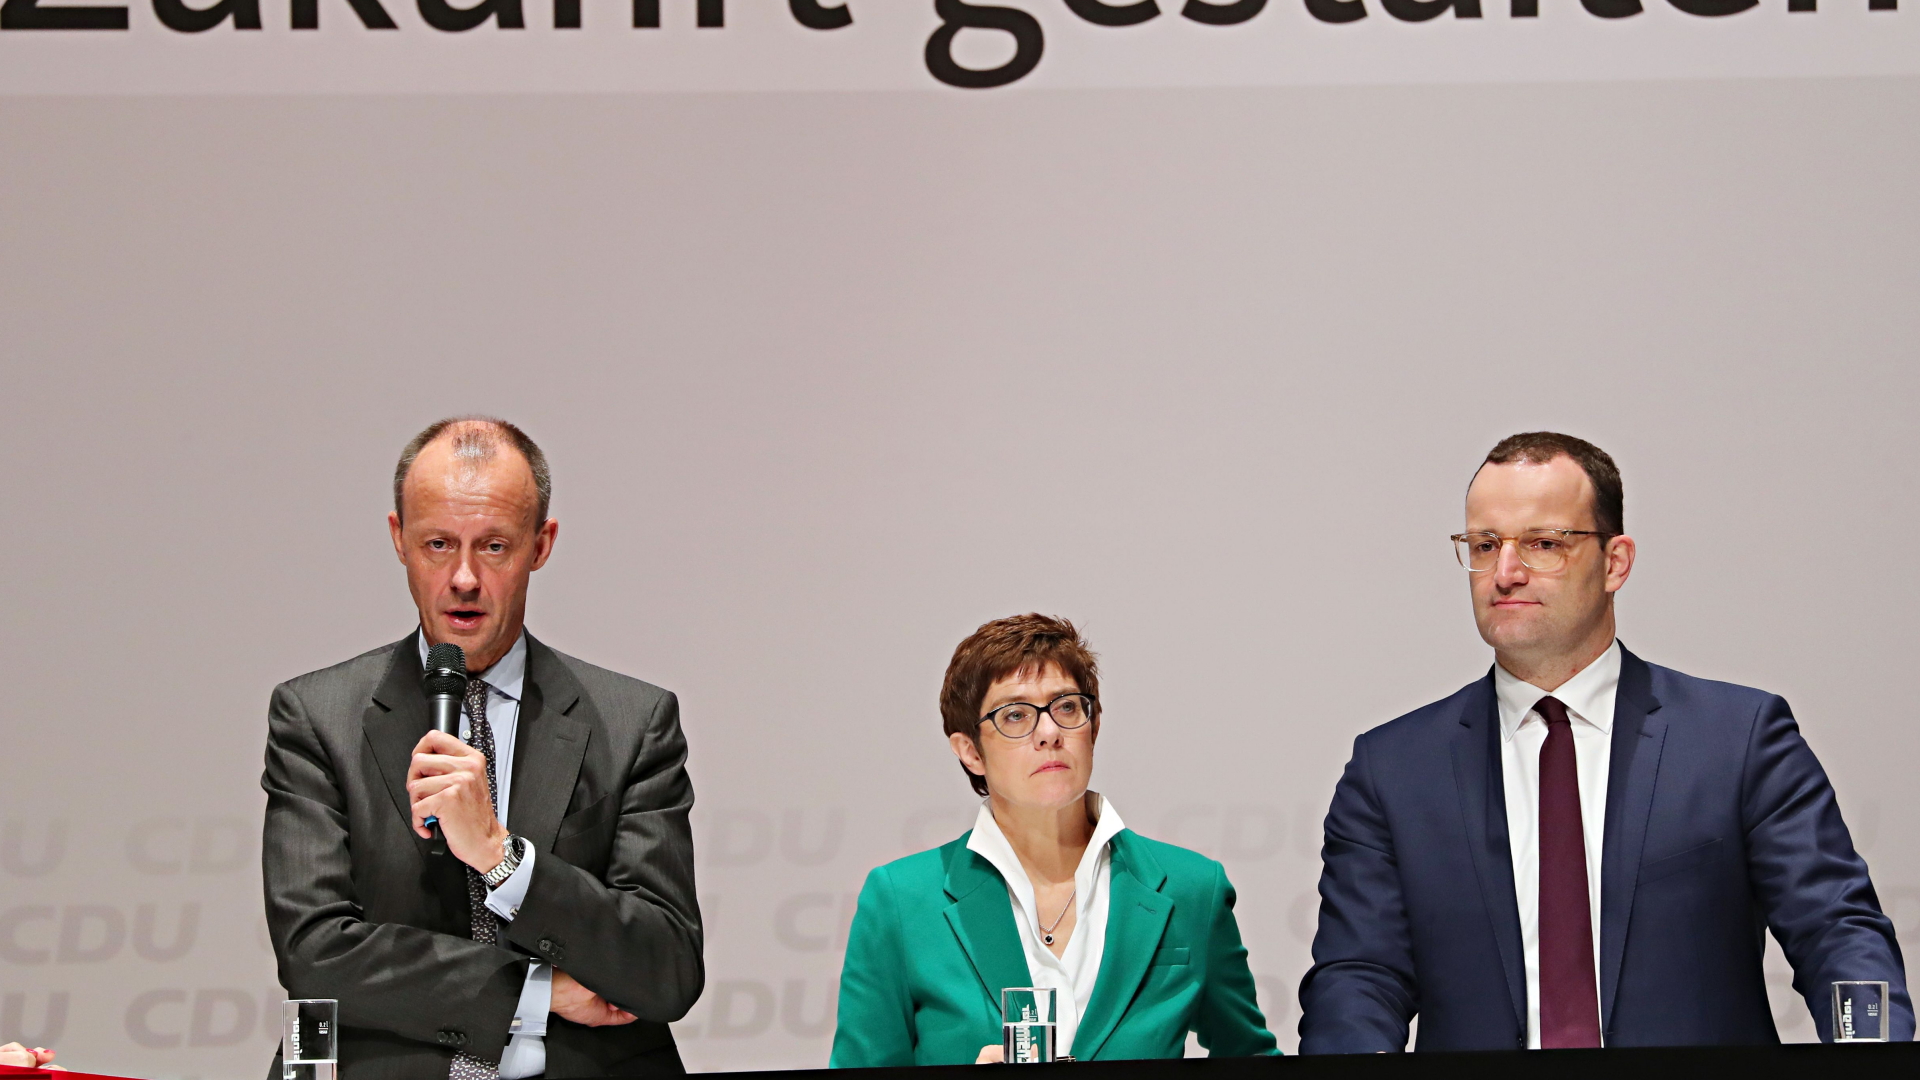 Friedrich Merz, Annegret Kramp-Karrenbauer und Jens Spahn bei der Regionalkonferenz in Böblingen.  | Bildquelle: FRANZISKA KRAUFMANN/EPA-EFE/REX/